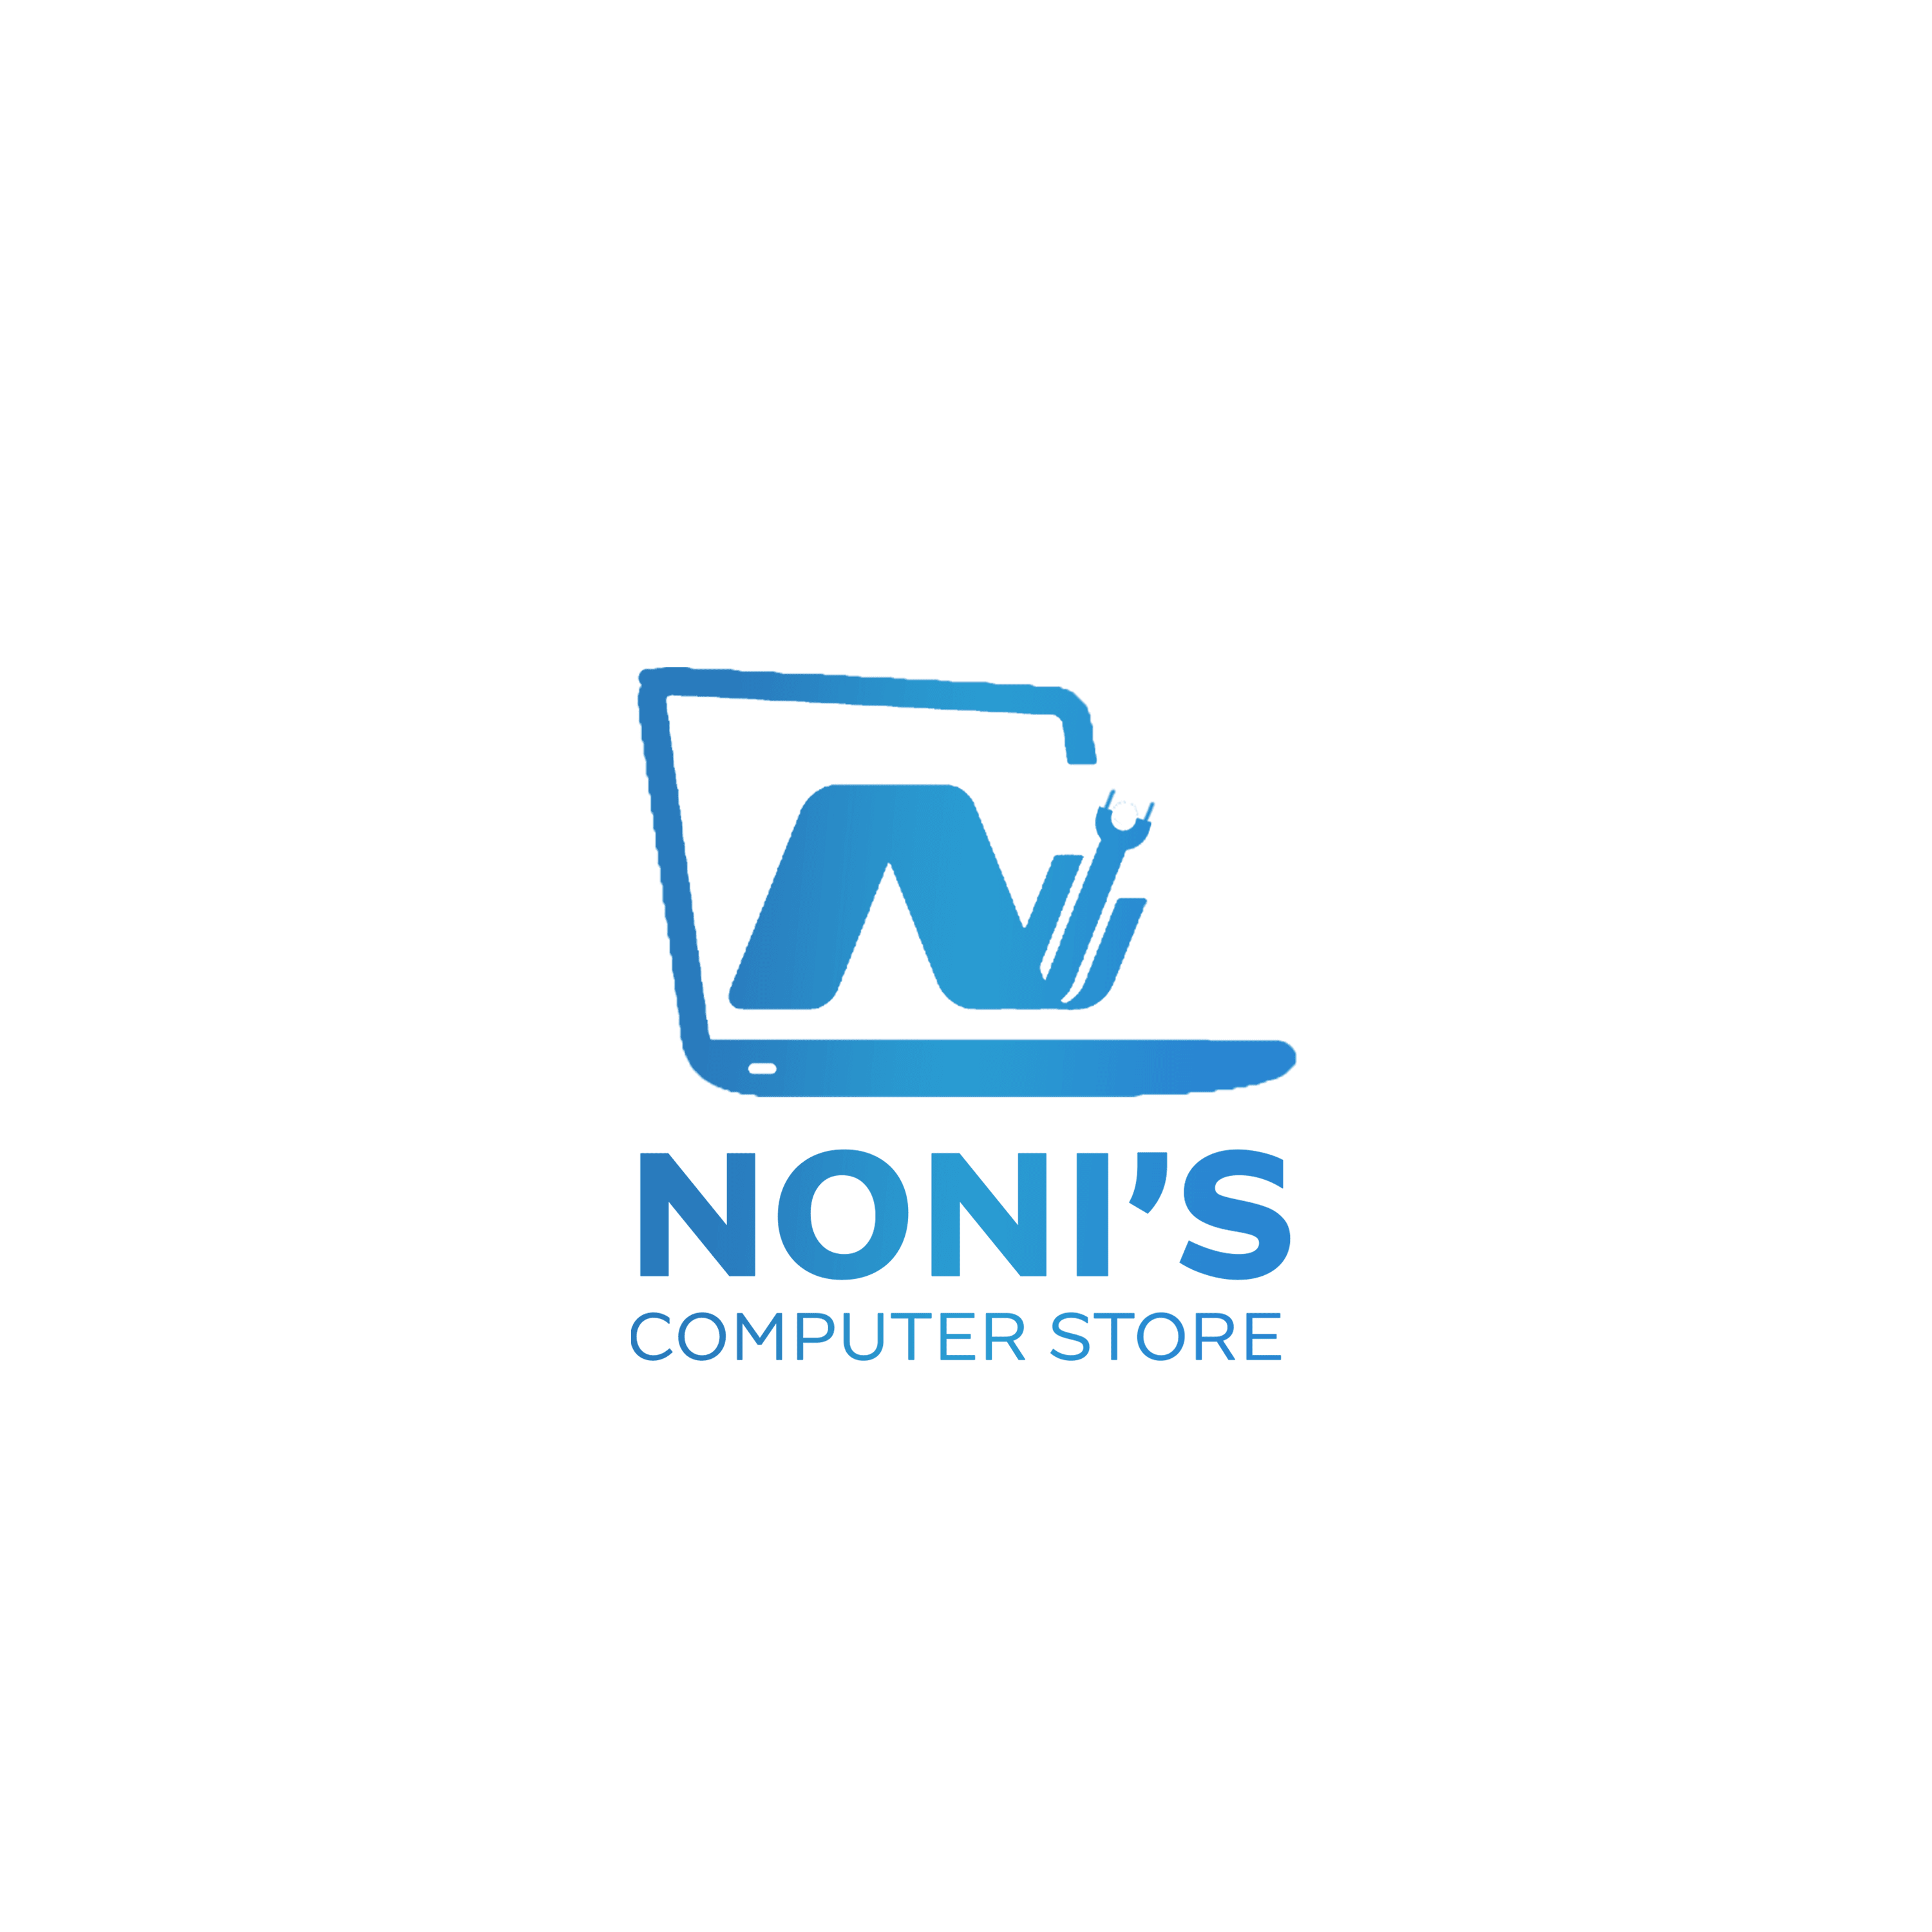 Noni's Computer Store